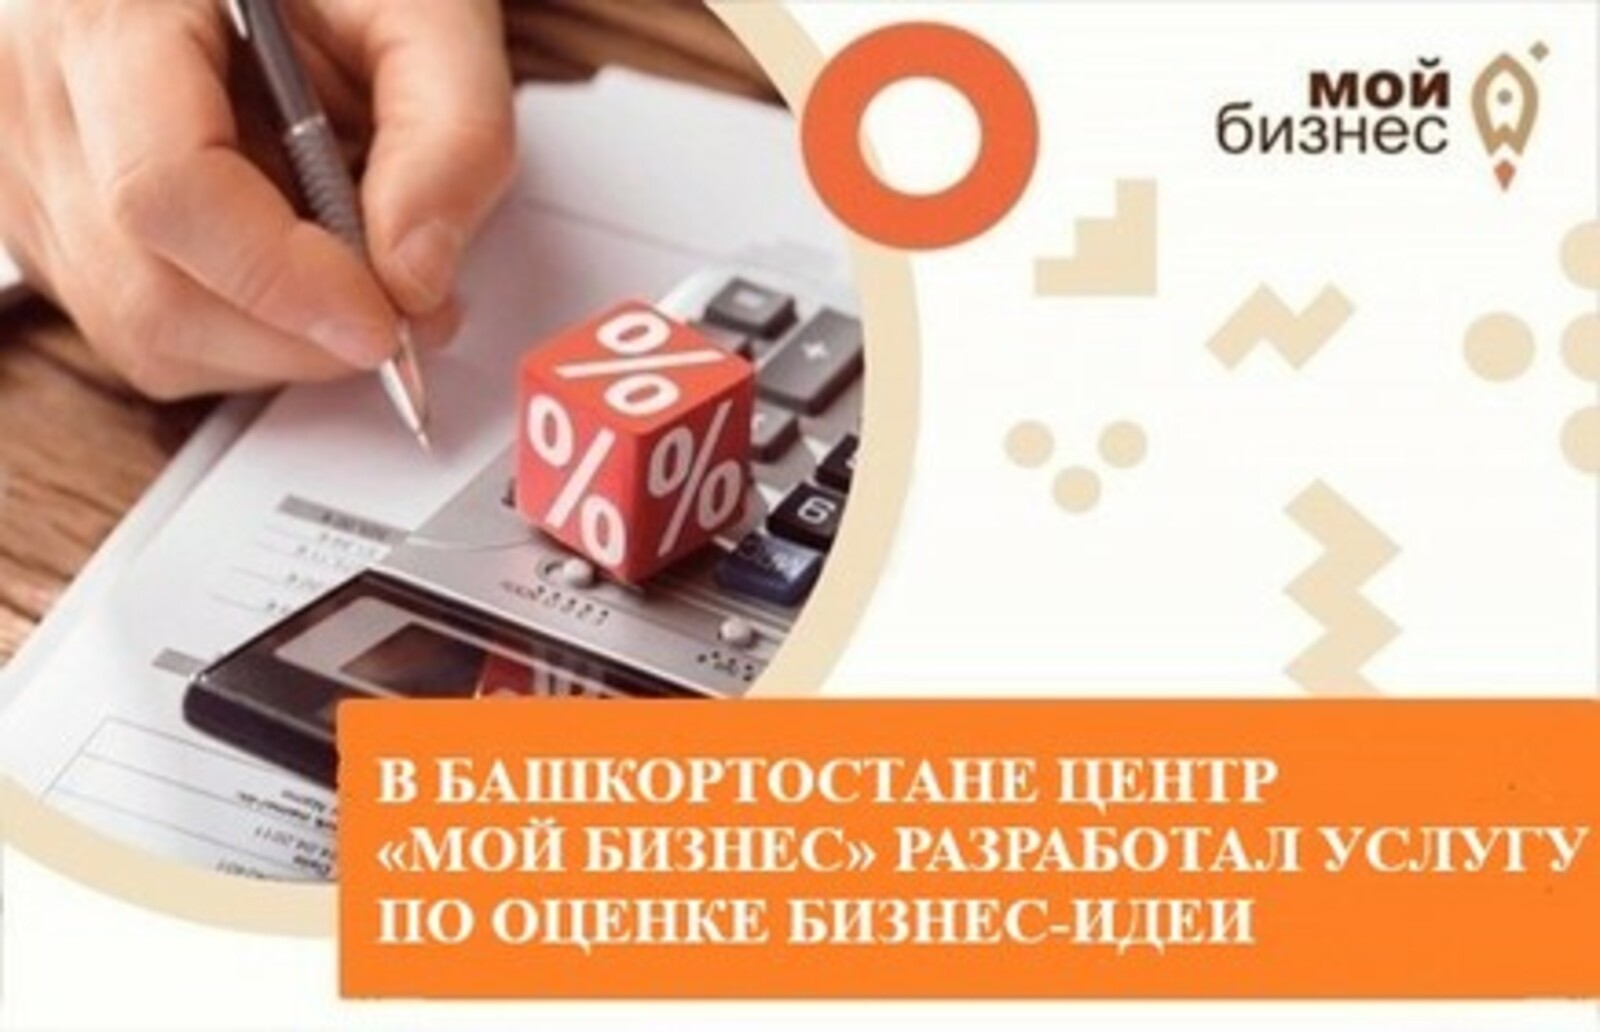 В Башкортостане Центр «Мой бизнес» разработал услугу по оценке бизнес-идеи